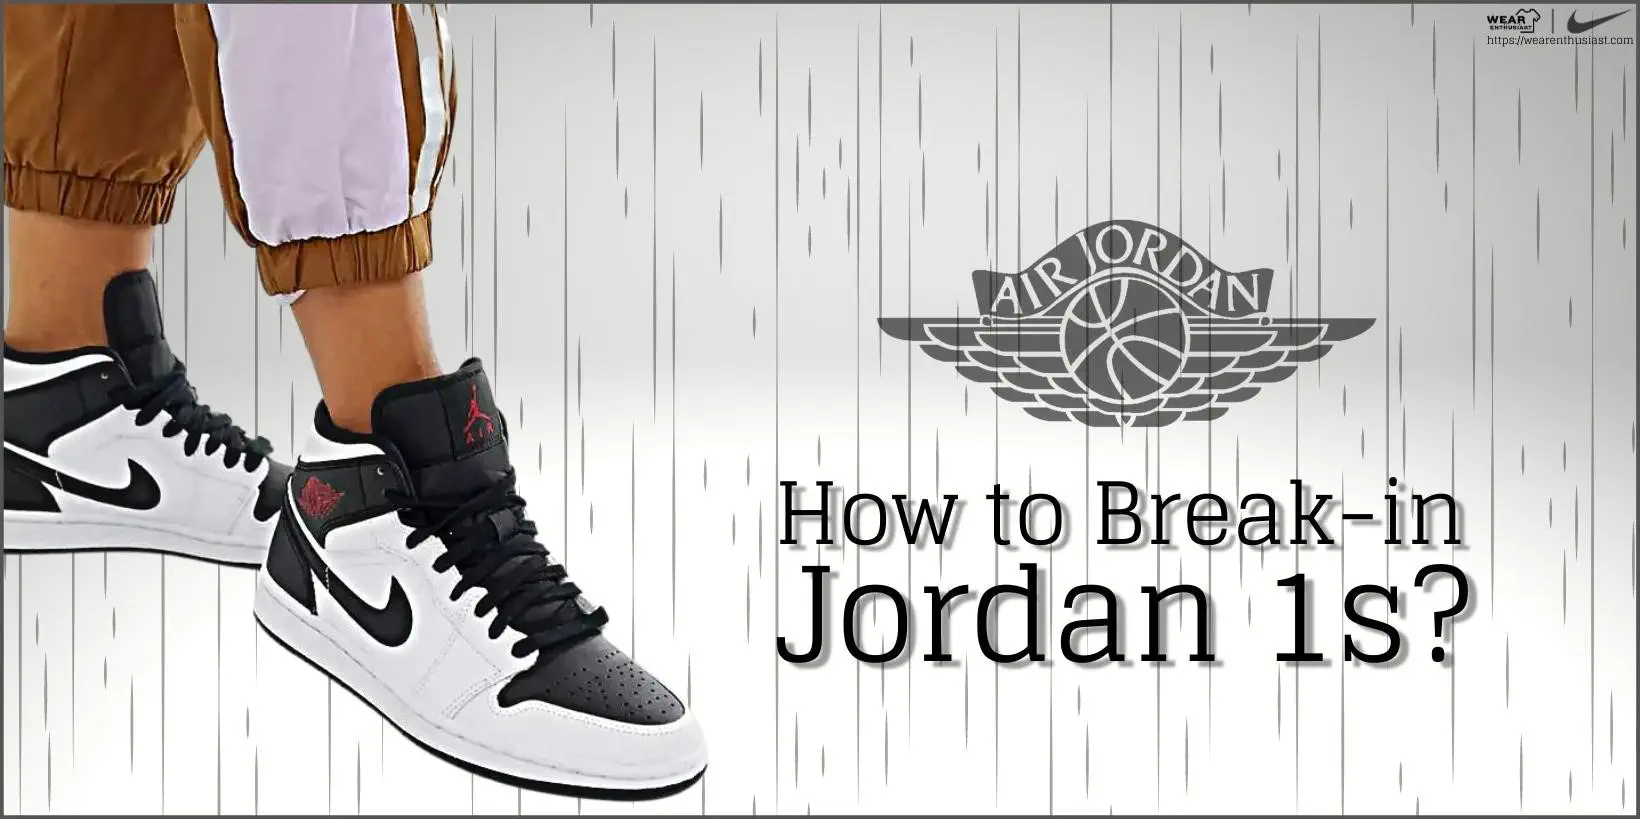 How to Break in Jordan 1s?